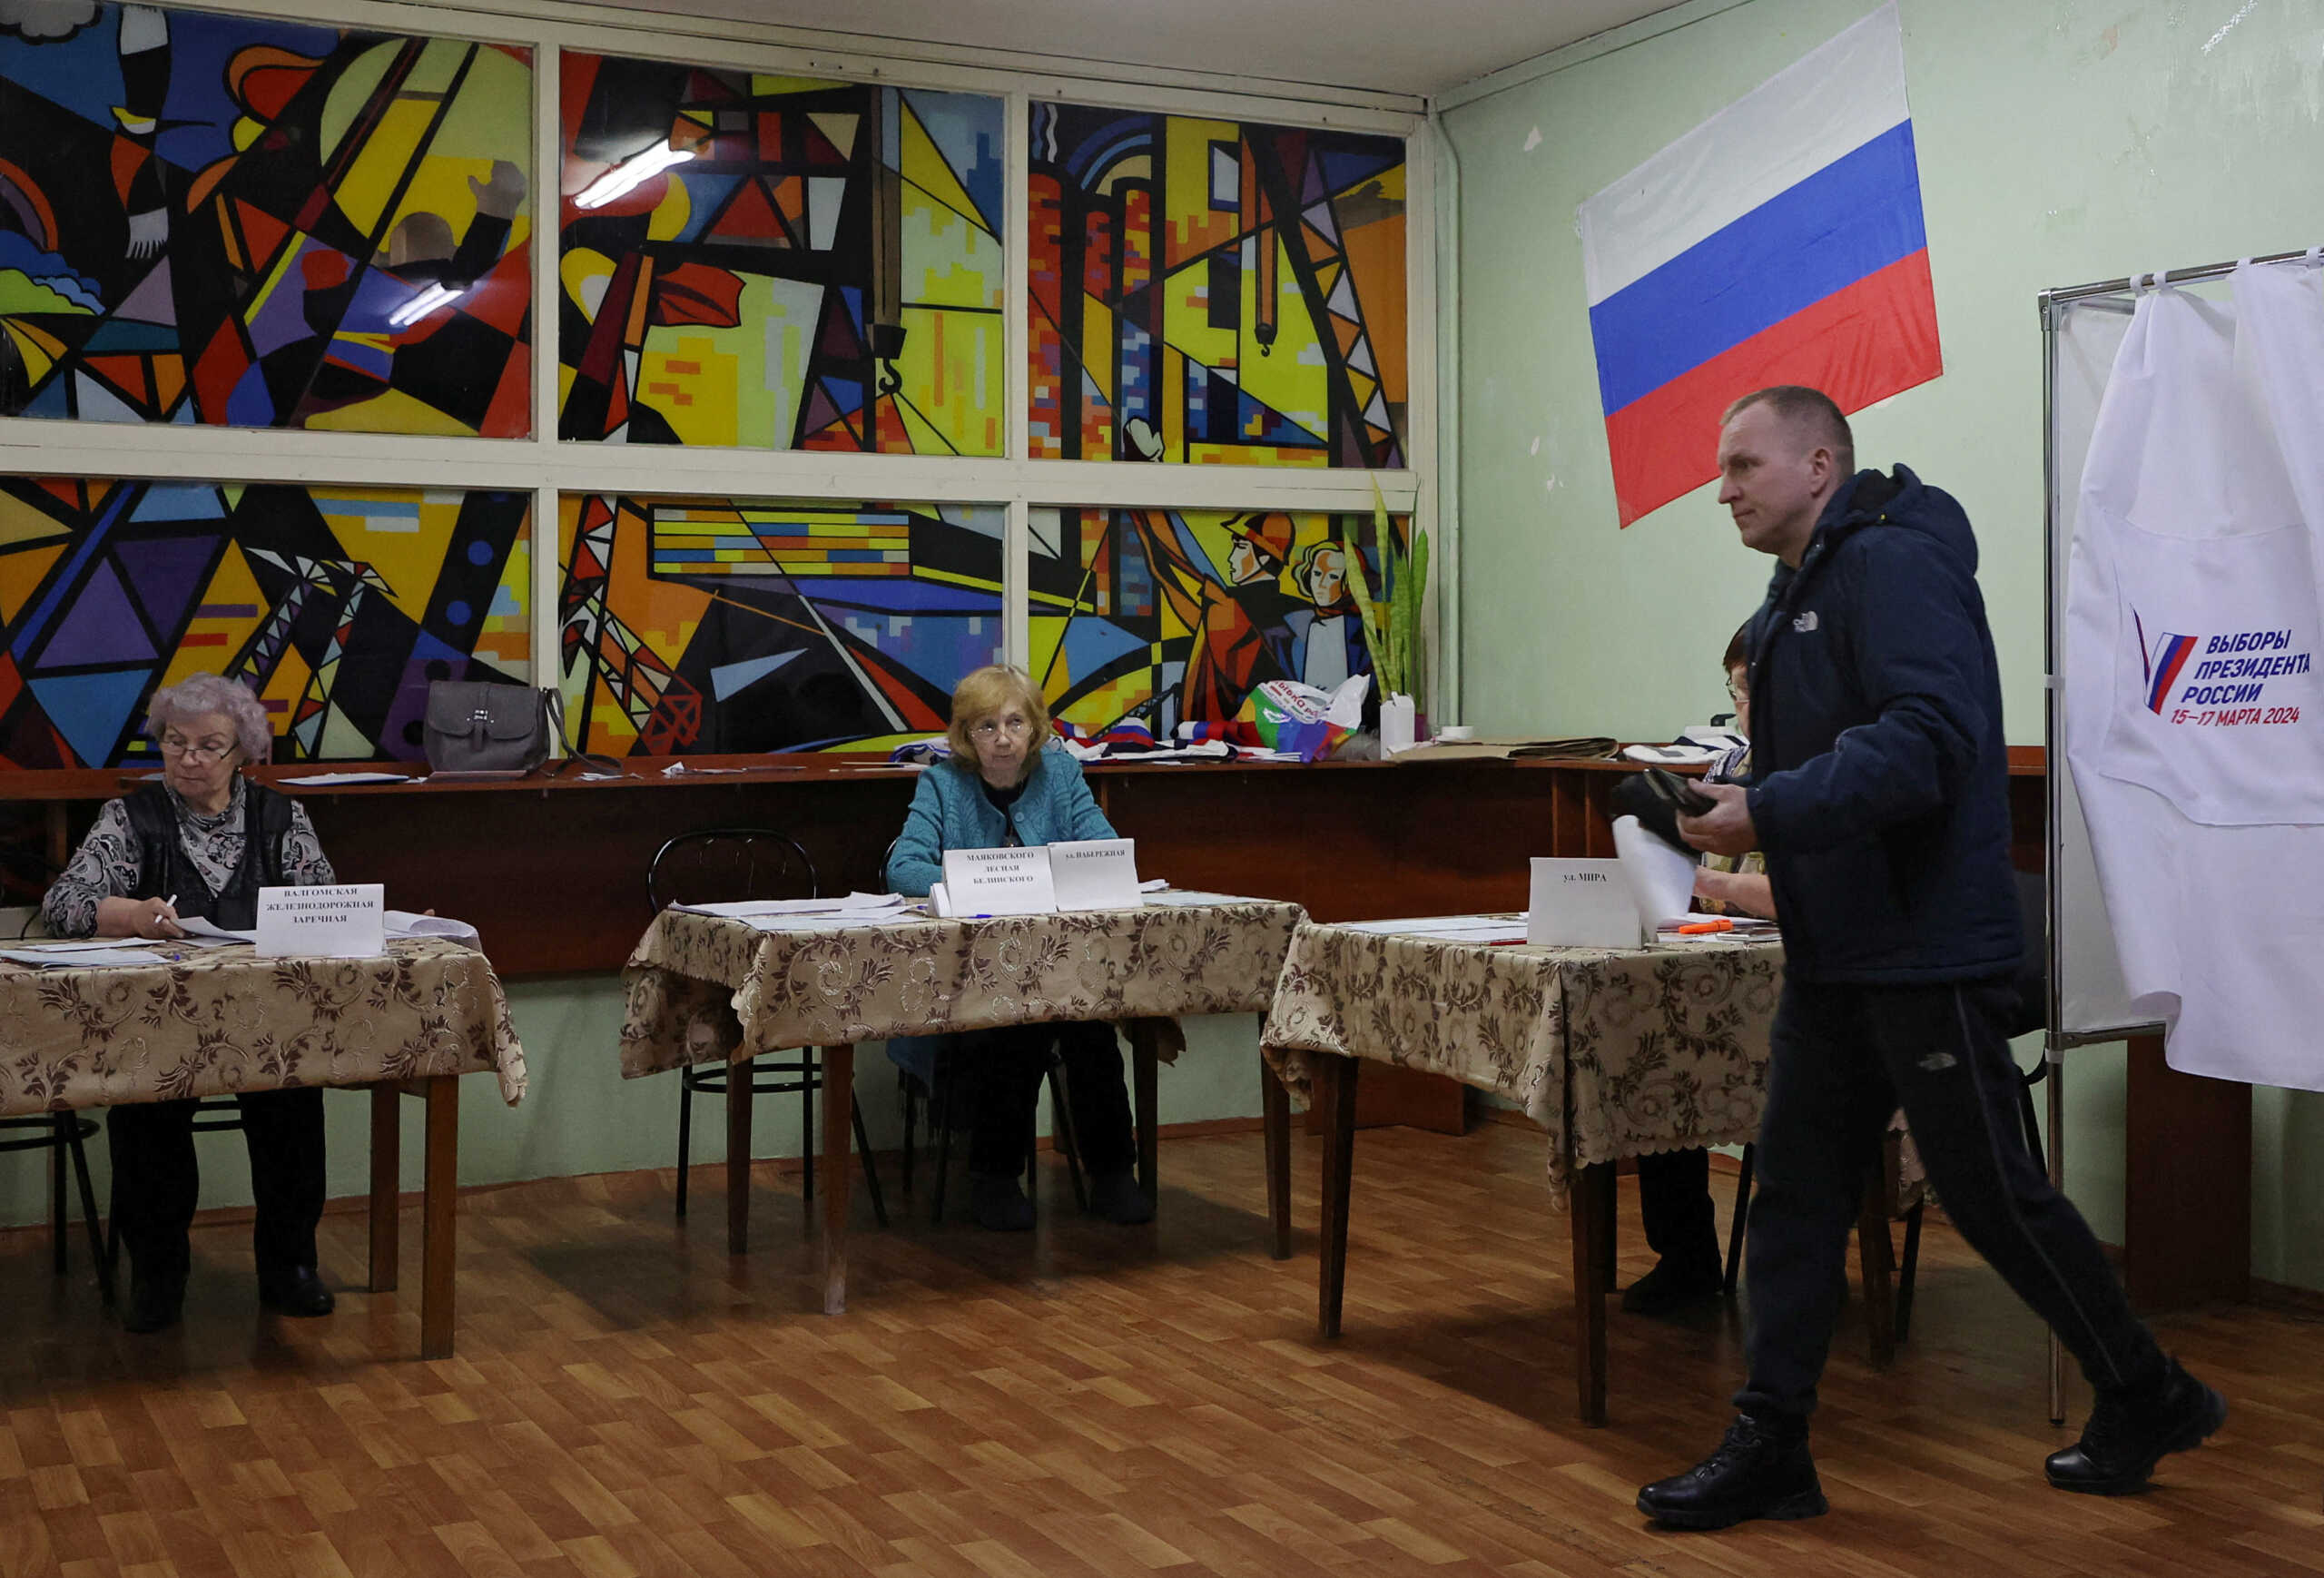 Ρωσία: Μολότοφ, εμπρησμοί και ακύρωση ψηφοδελτίων την πρώτη μέρα των προεδρικών εκλογών